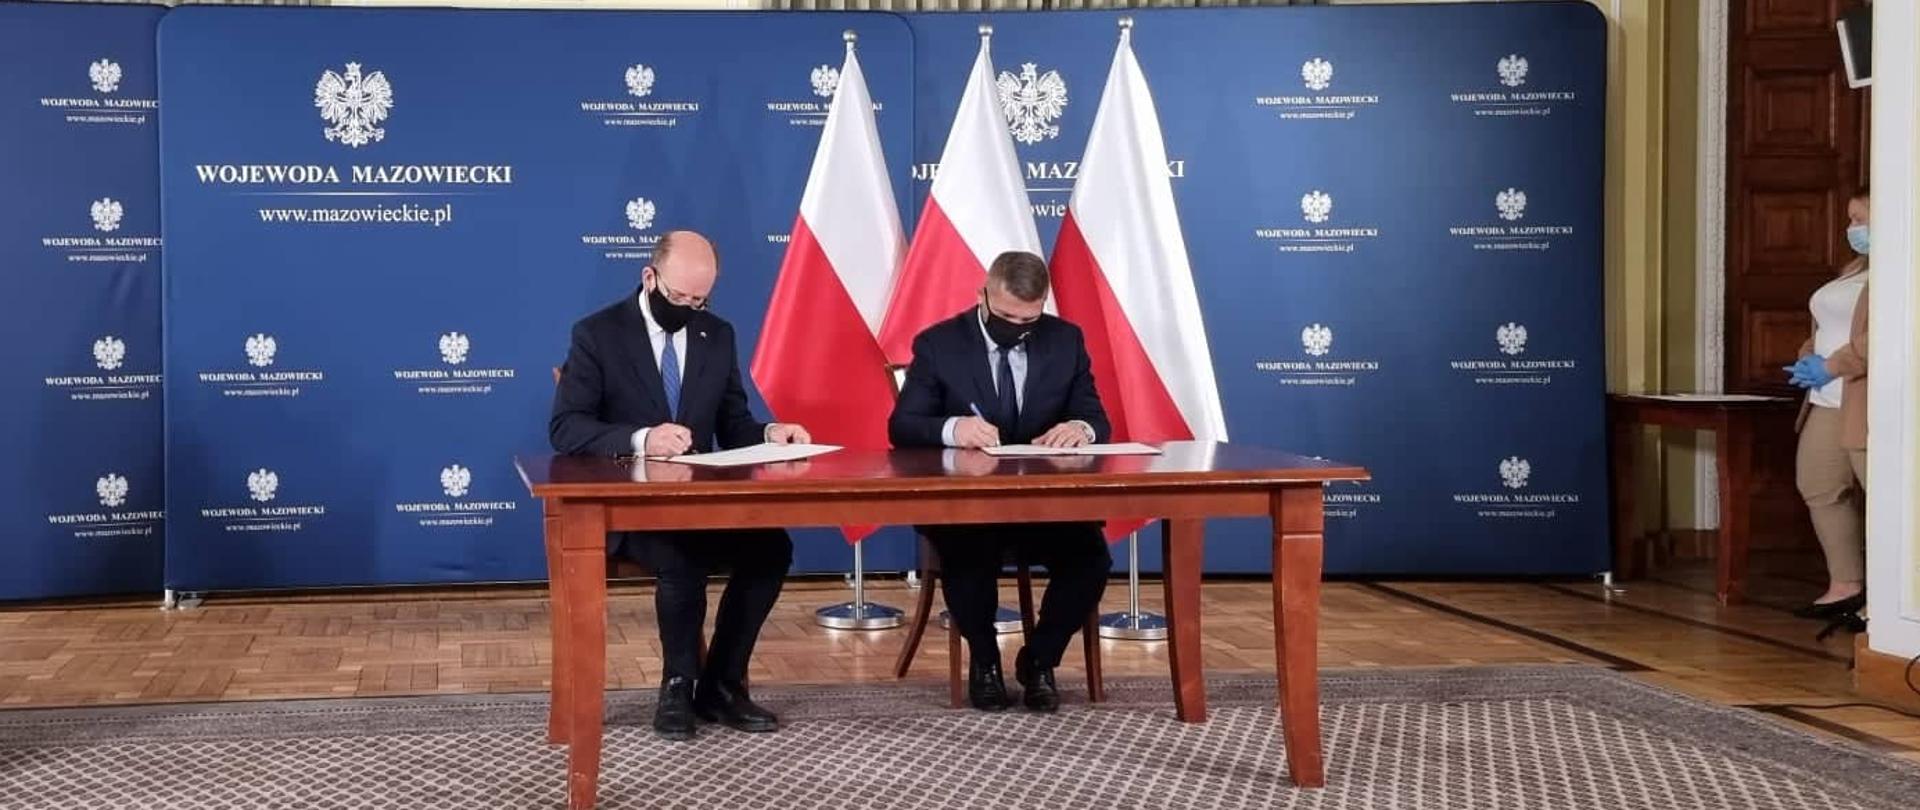 Podpisanie umowy w MUW w Warszawie, 01.12.2021 r. fot. 2